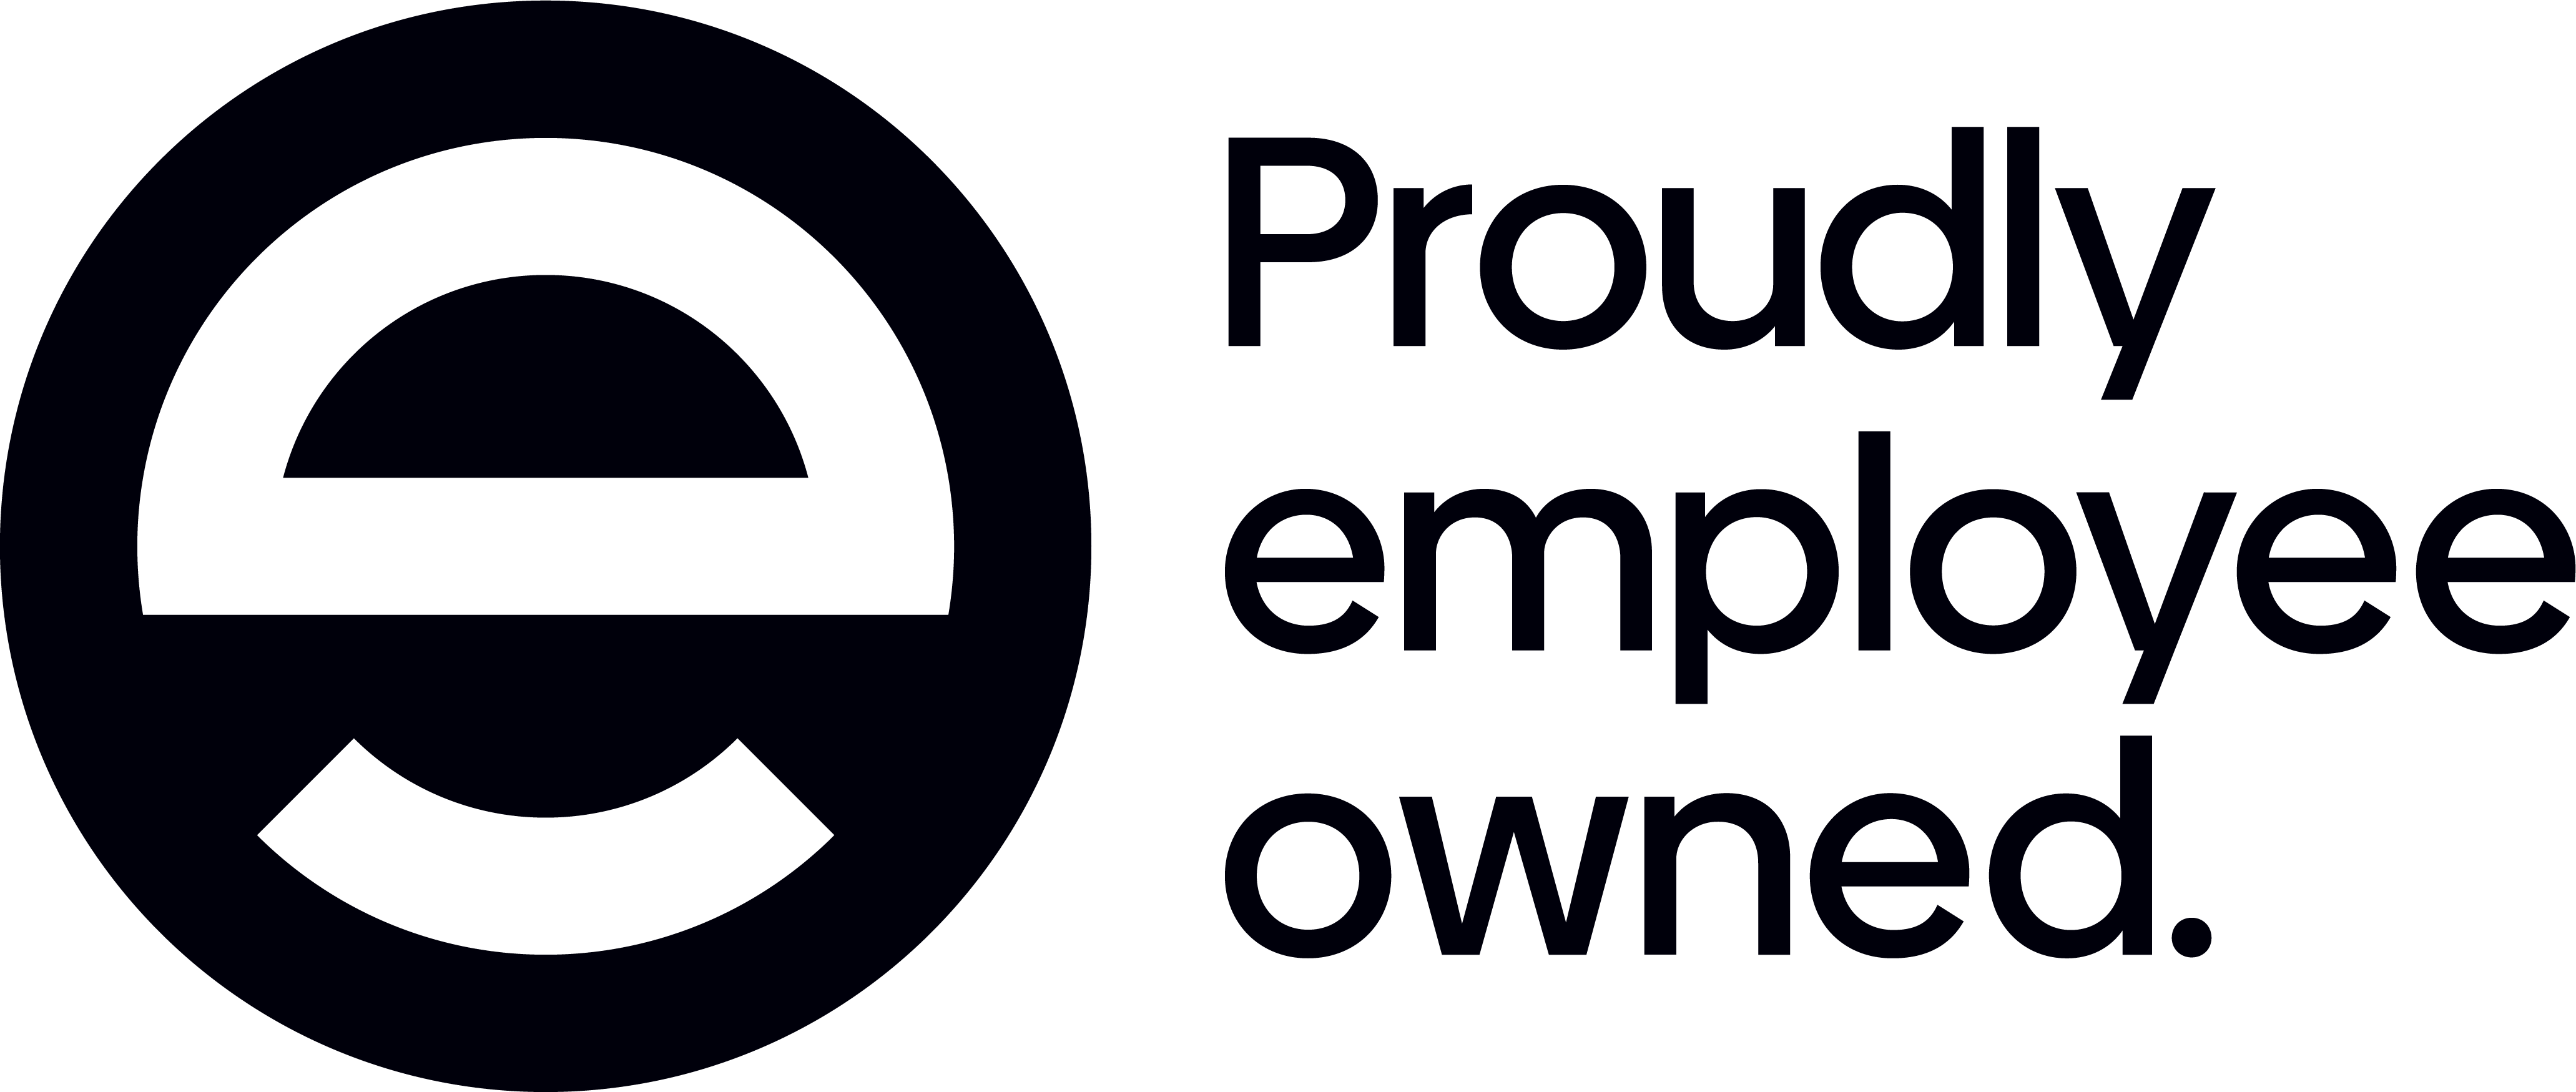 EOA Logo